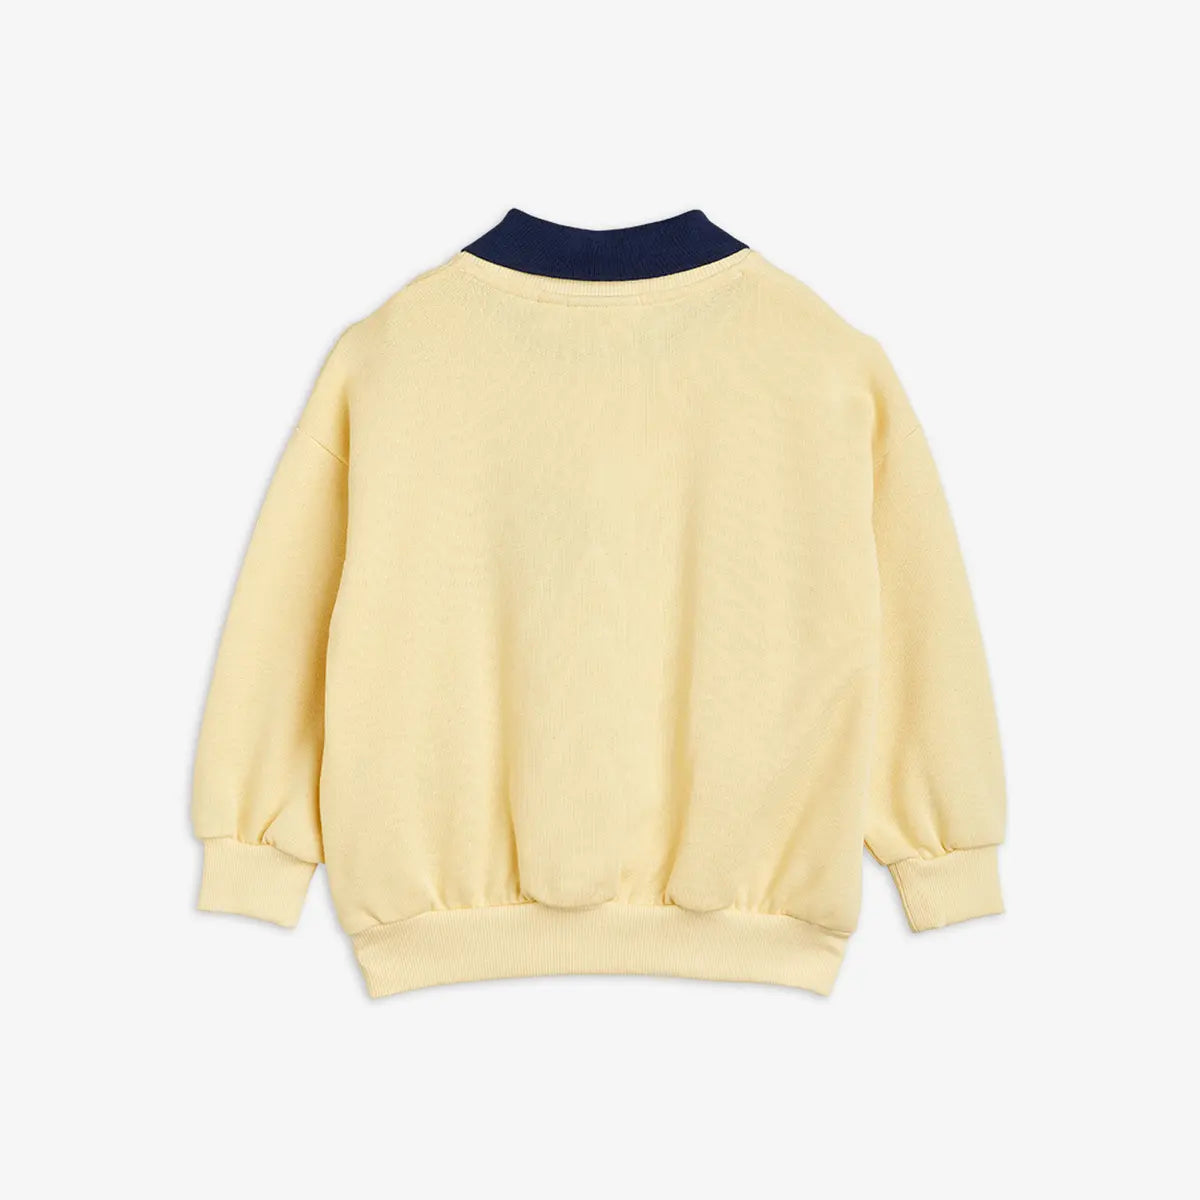 Baguette Sweater